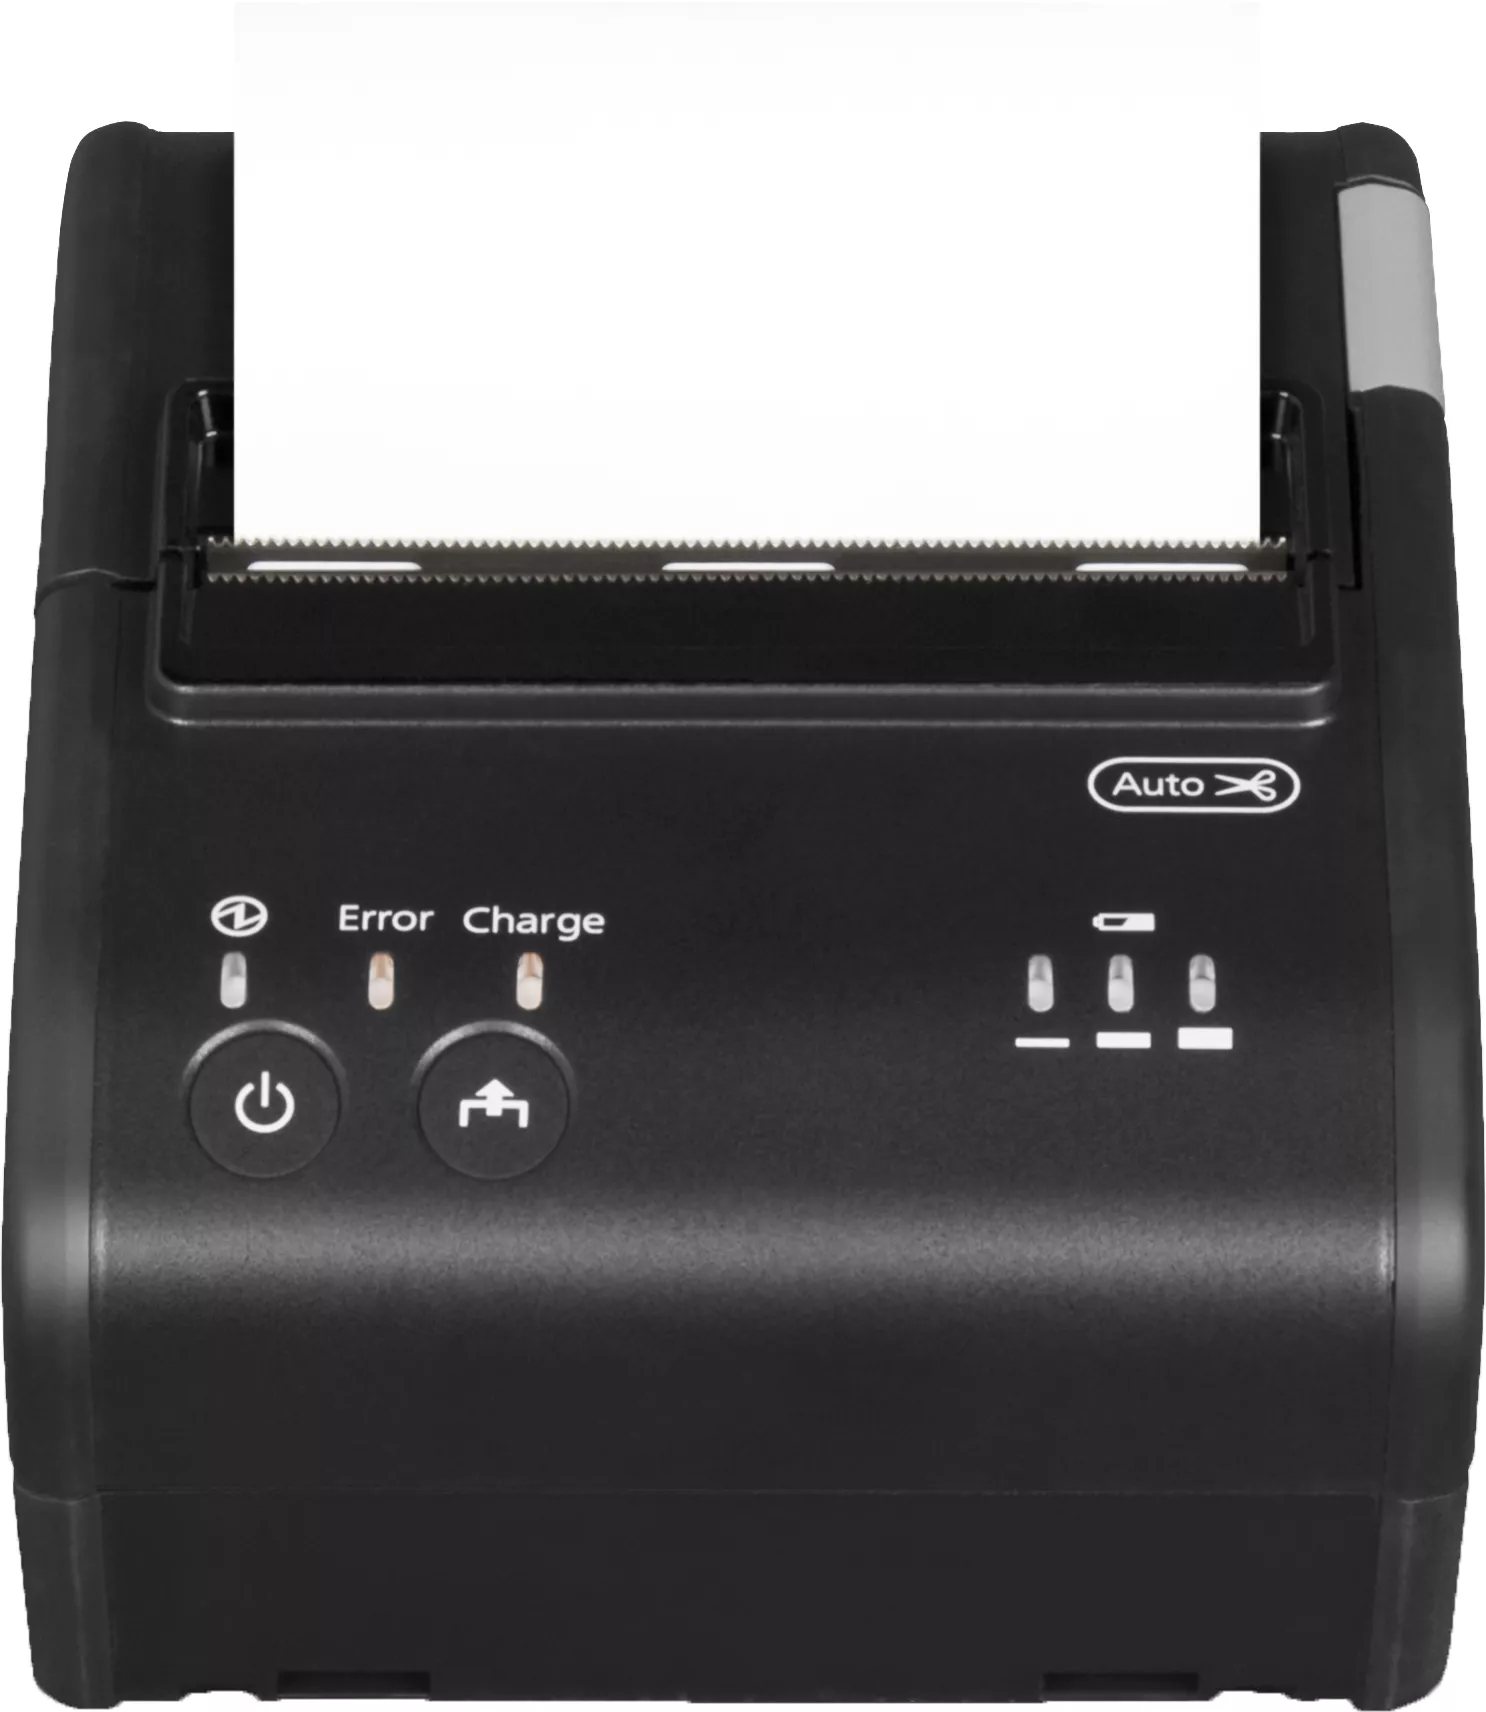 Revendeur officiel Autre Imprimante Epson TM-P80 (321): Receipt, Autocutter, NFC, WiFi, PS, EU